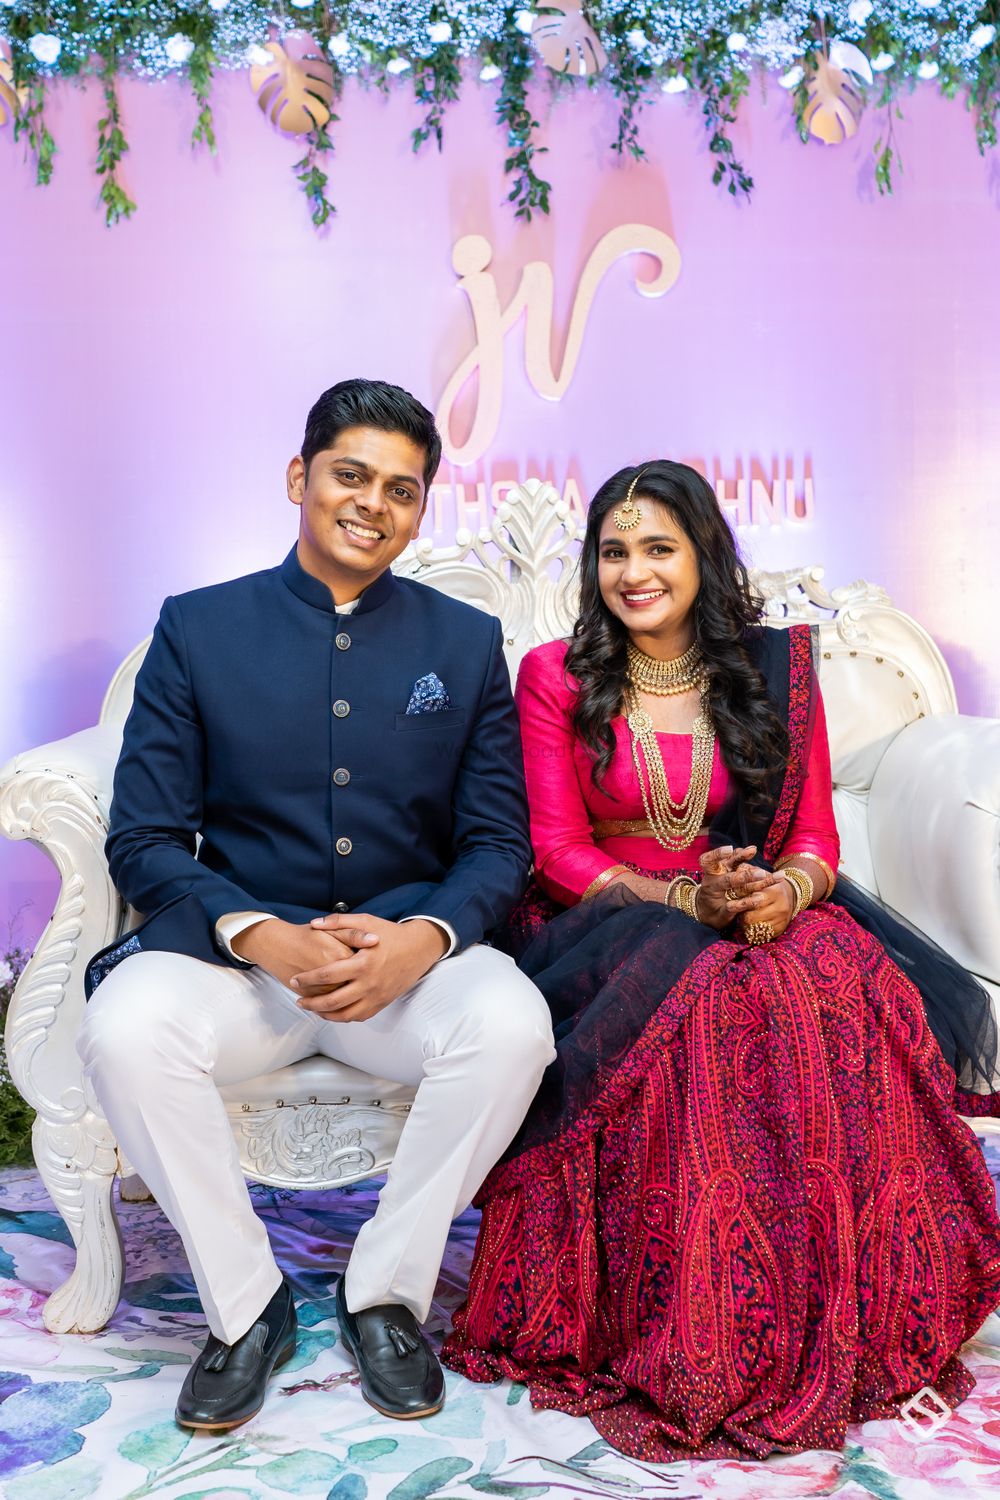 Photo From Vishnu & Jyothsna - By WeddingsBySharath